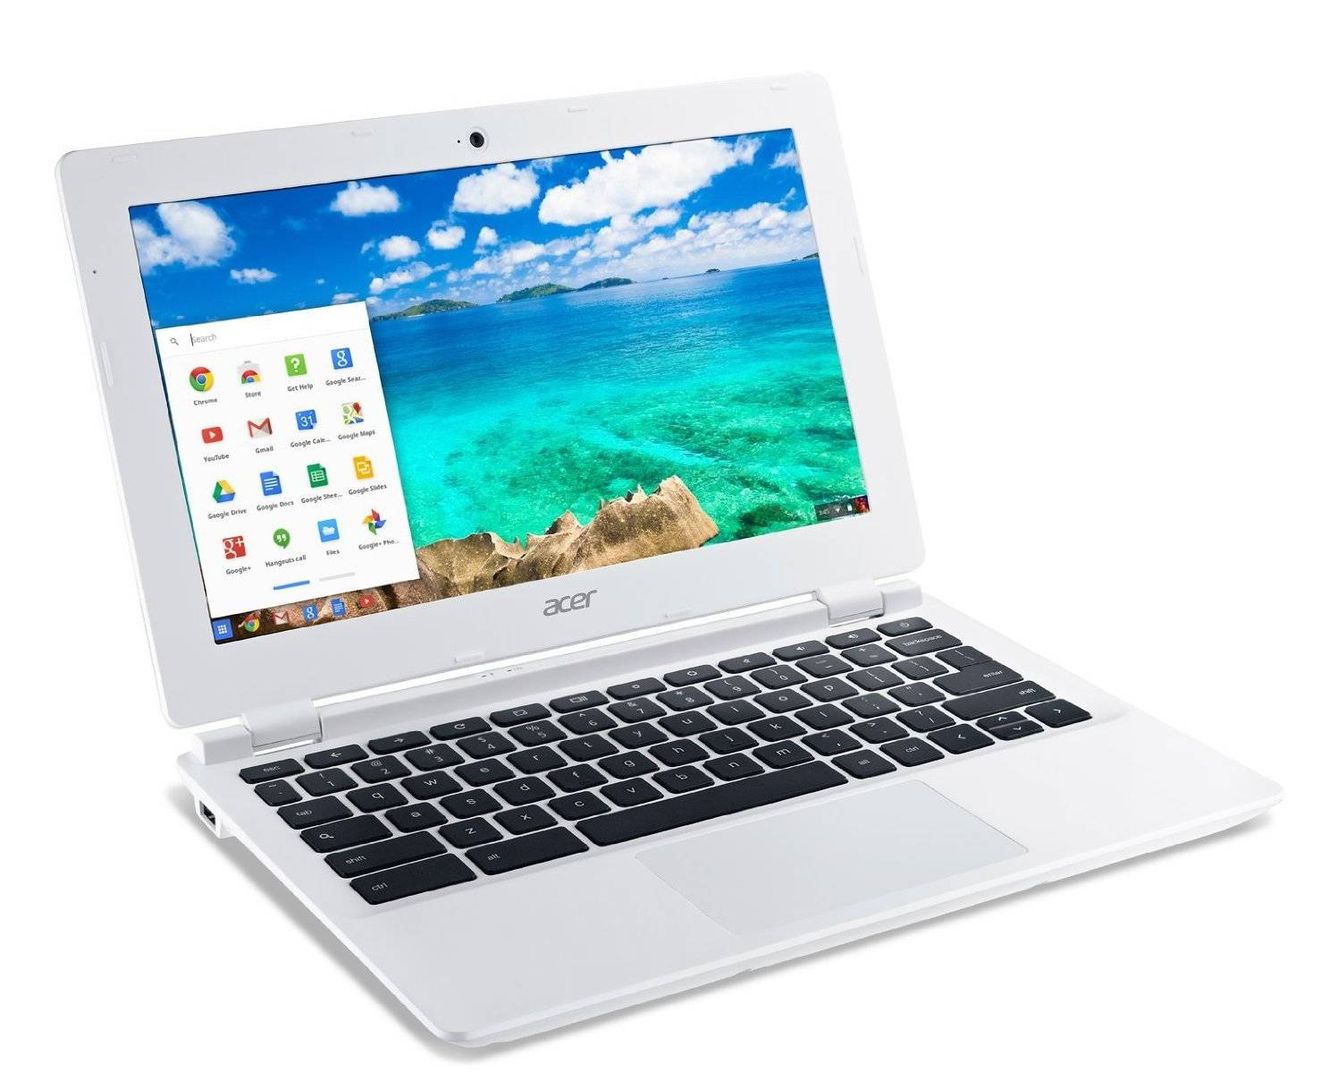 Acer Chromebook CB3, una buena y barata opción para el trabajo y el ocio. (Amazon)